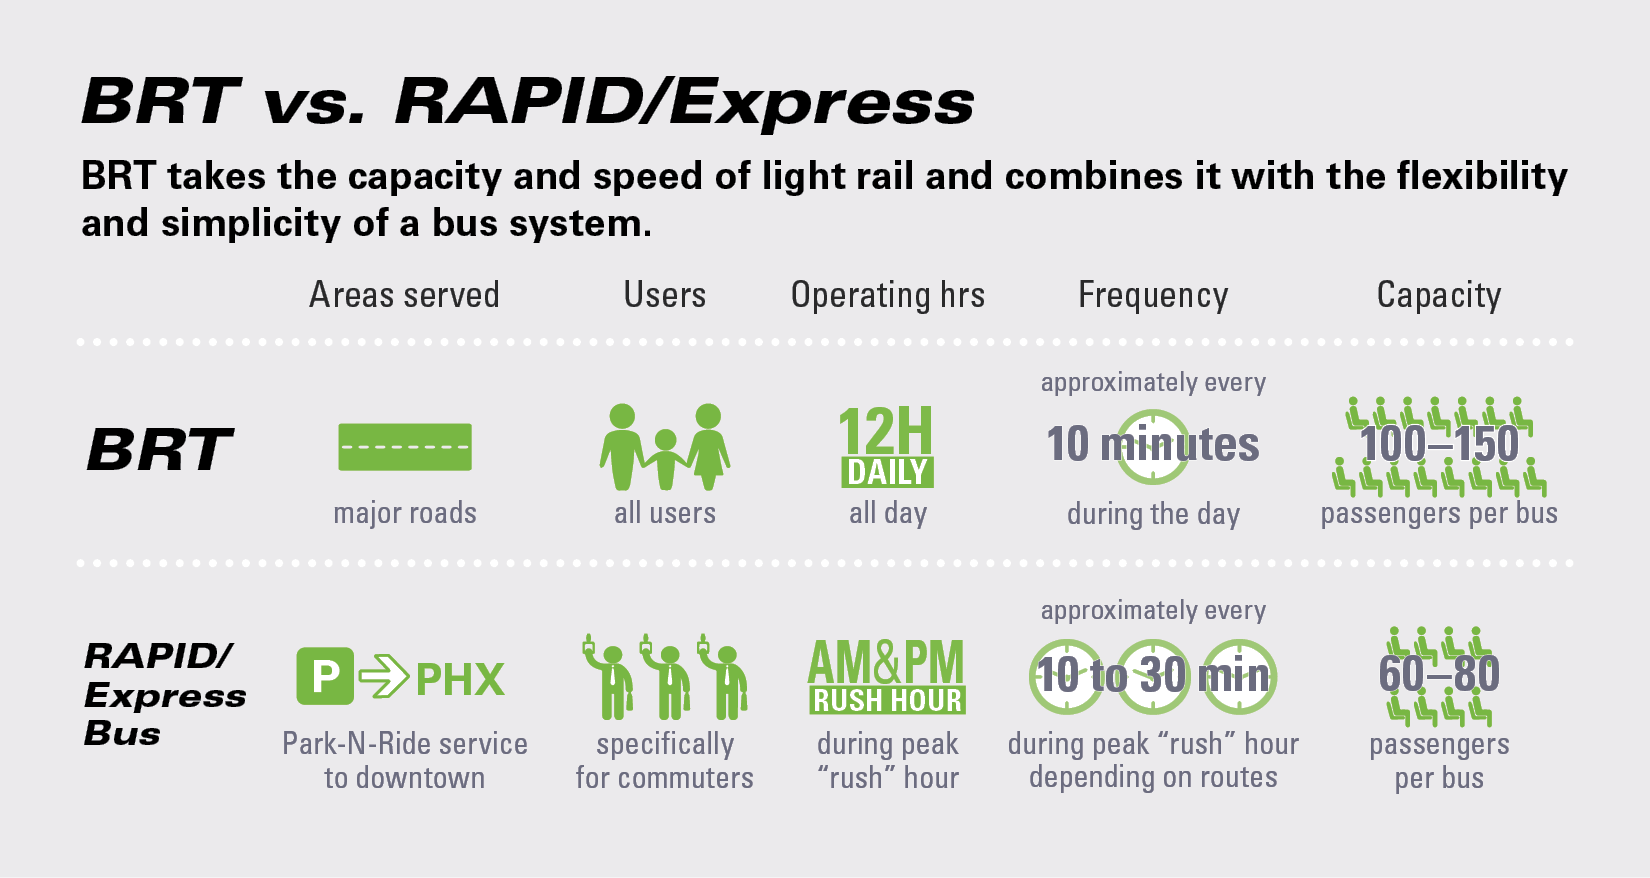 BRT versus RAPID and Express